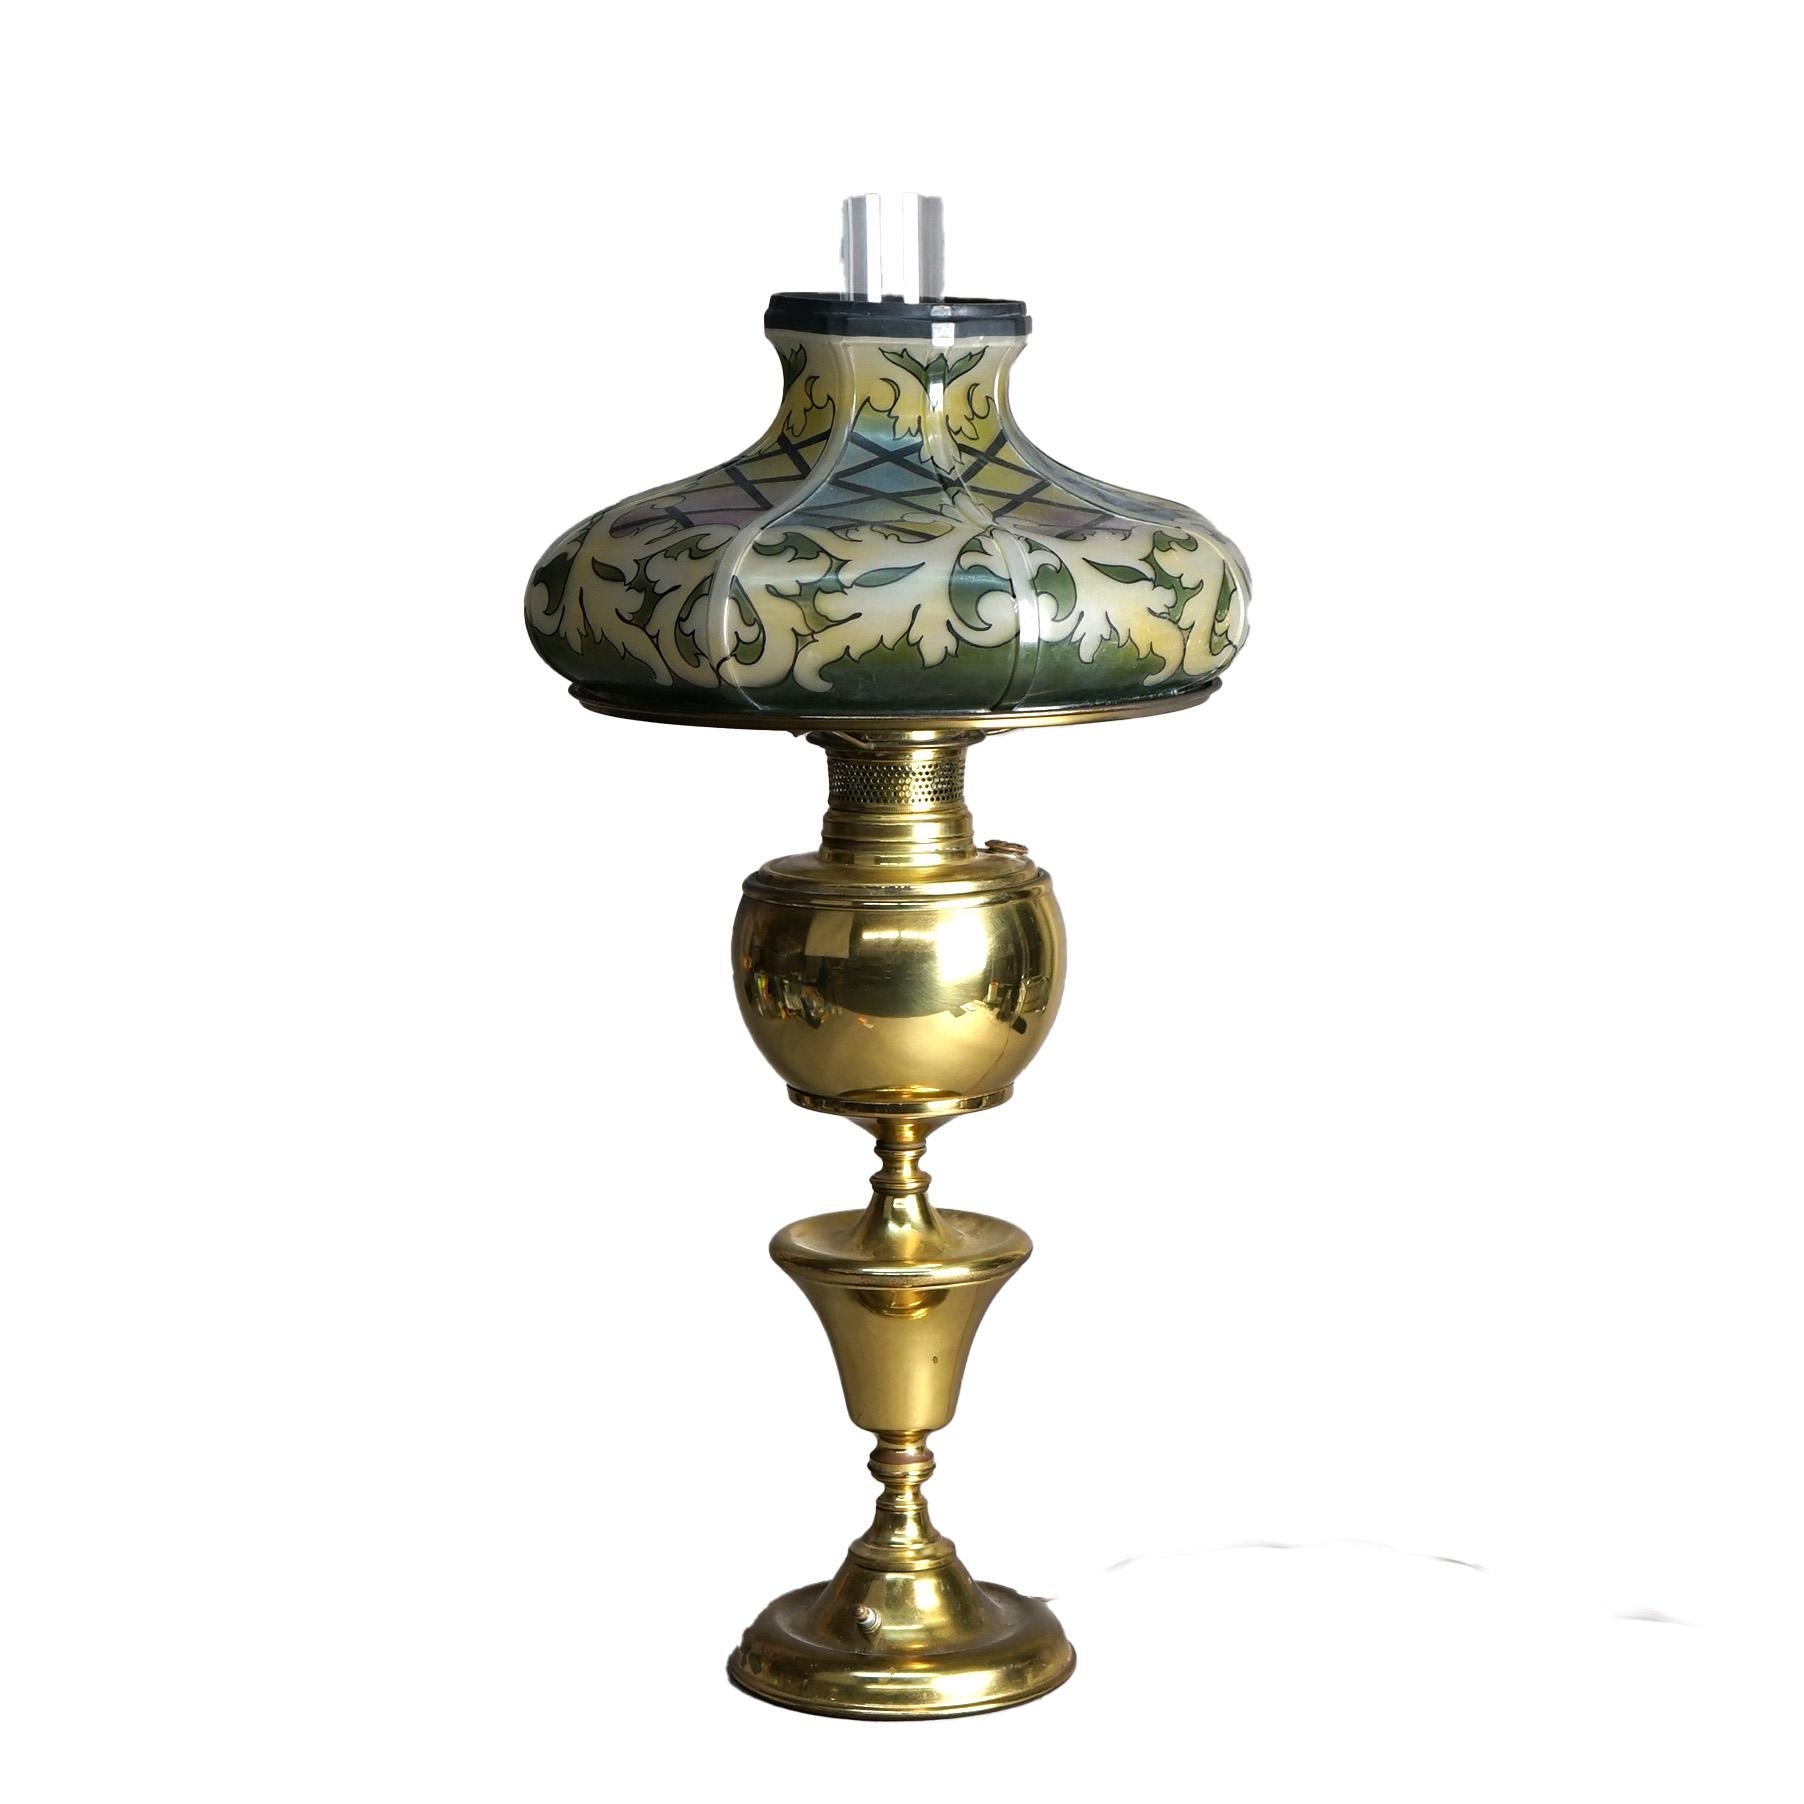 Un'antica lampada da tavolo da banchetto Arts and Crafts offre un paralume in vetro sfaccettato con un disegno stilizzato in vetro piombato su una base a forma di balaustra in ottone, 1910 ca.

Misure - 28 1/2